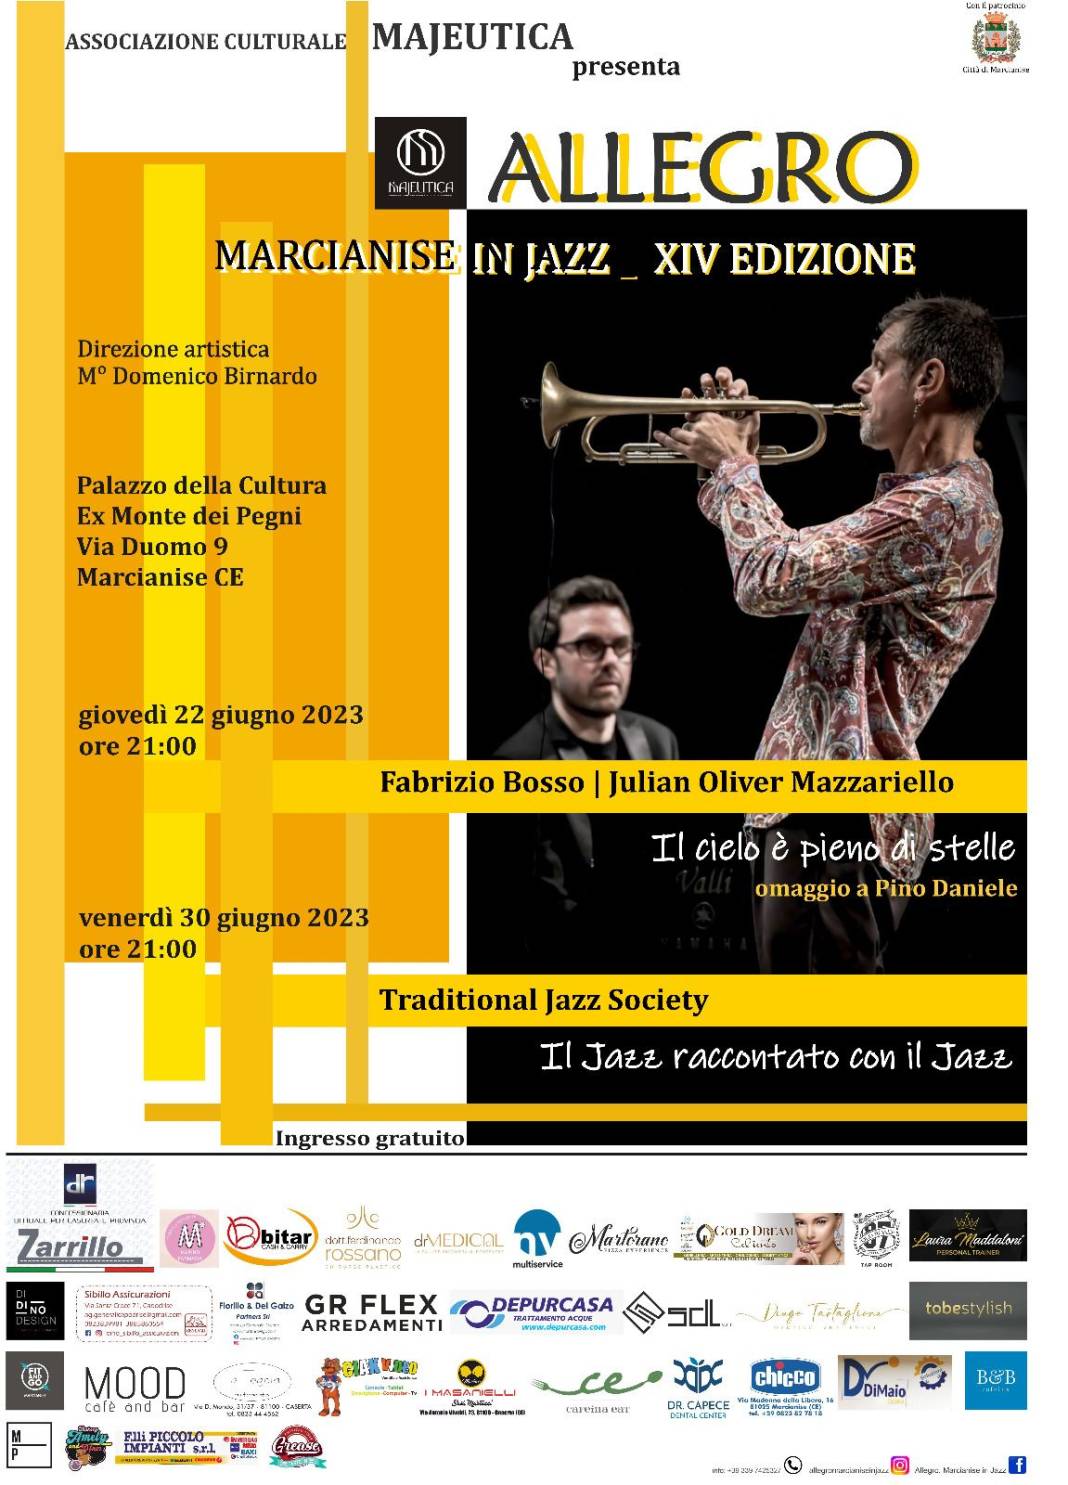 Marcianise in Jazz